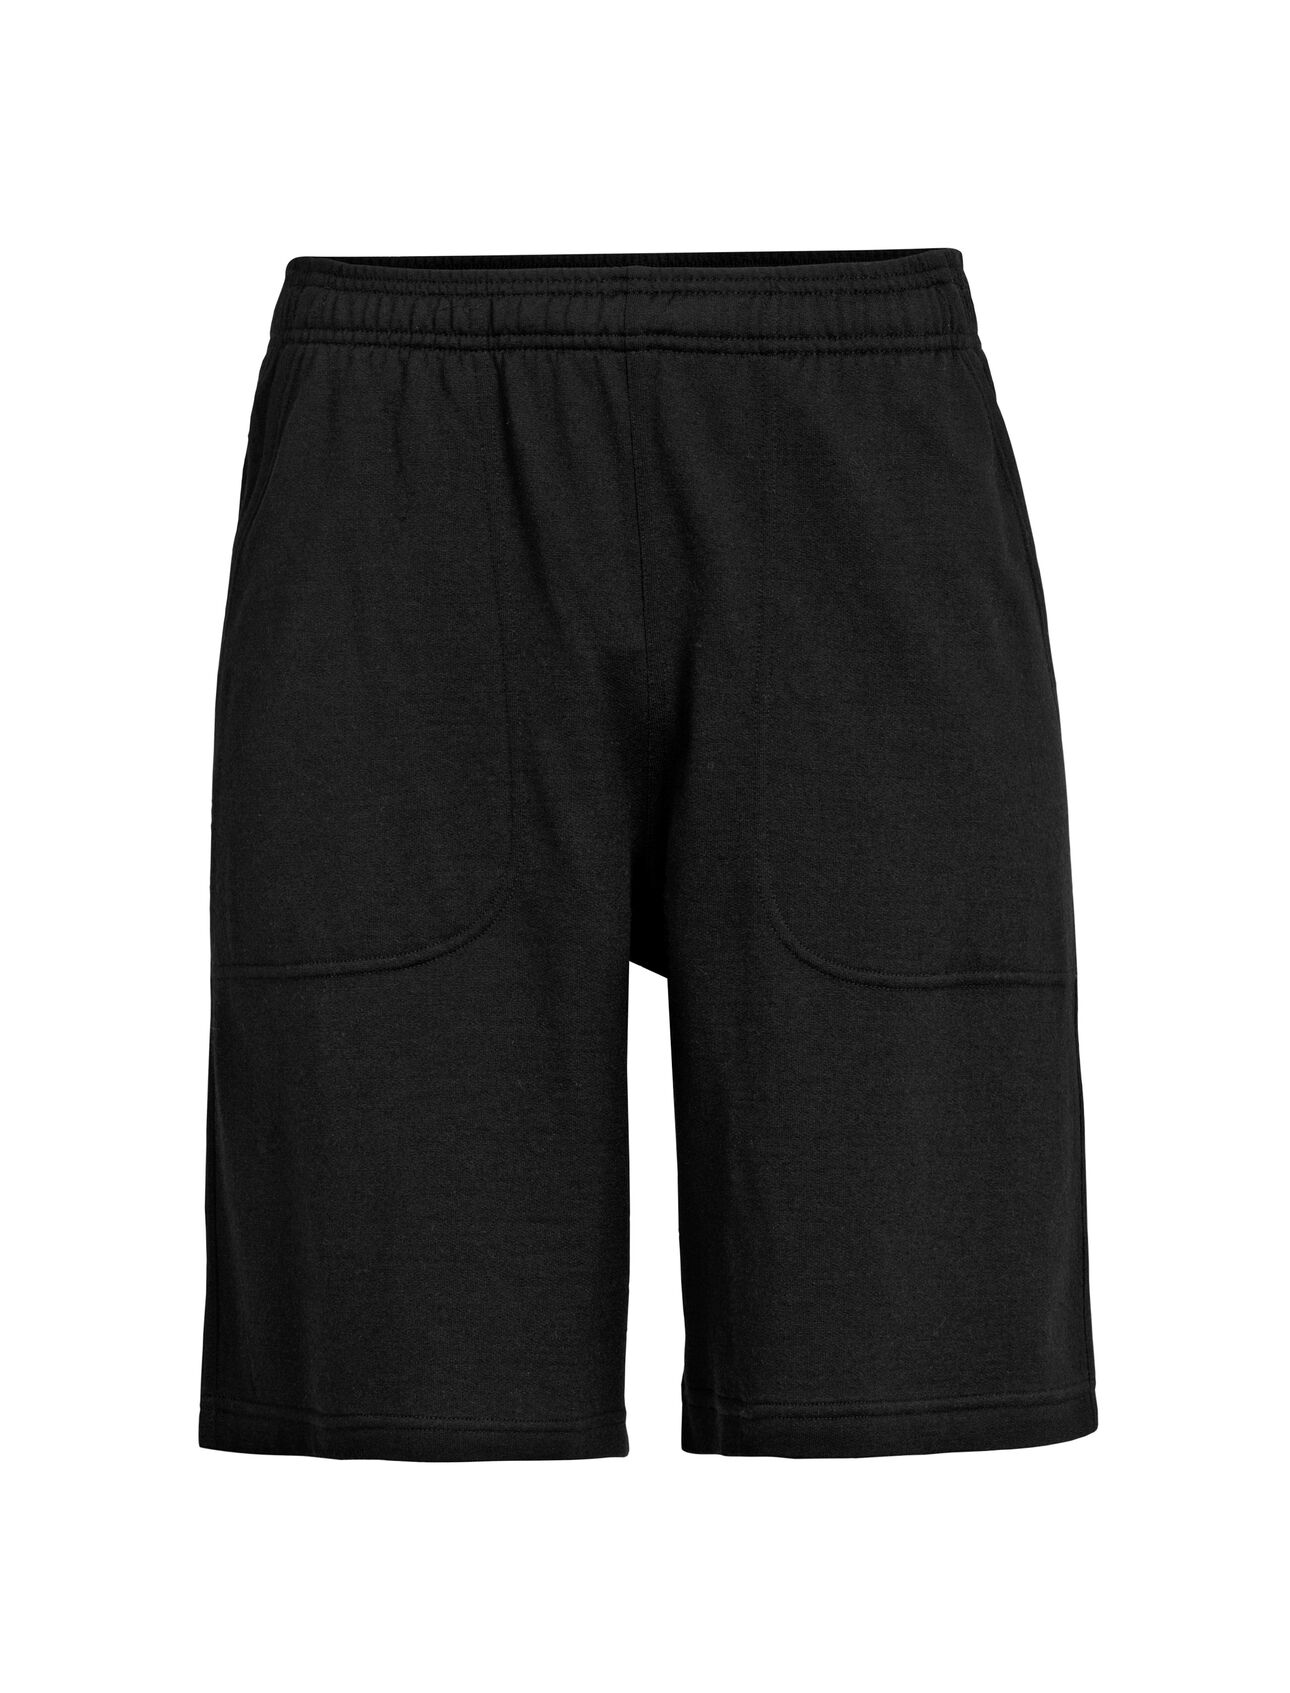 Men's Merino Shifter 9'' Shorts